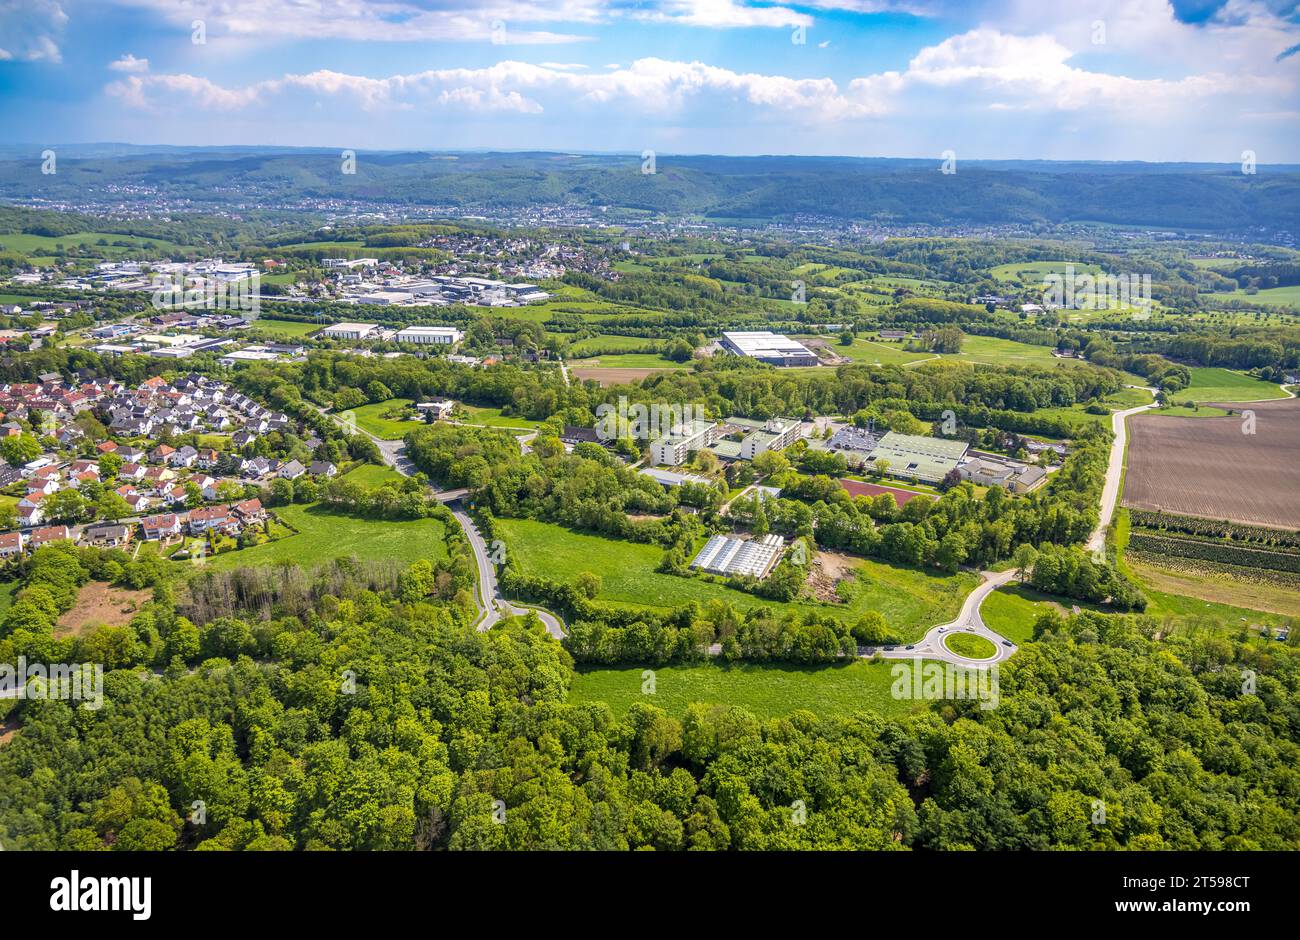 Aerial view, Volmarstein Vocational Training Center, Werner-Richard-Berufskolleg, Grundschöttel, Wetter, Ruhr area, North Rhine-Westphalia, Germany, V Stock Photo